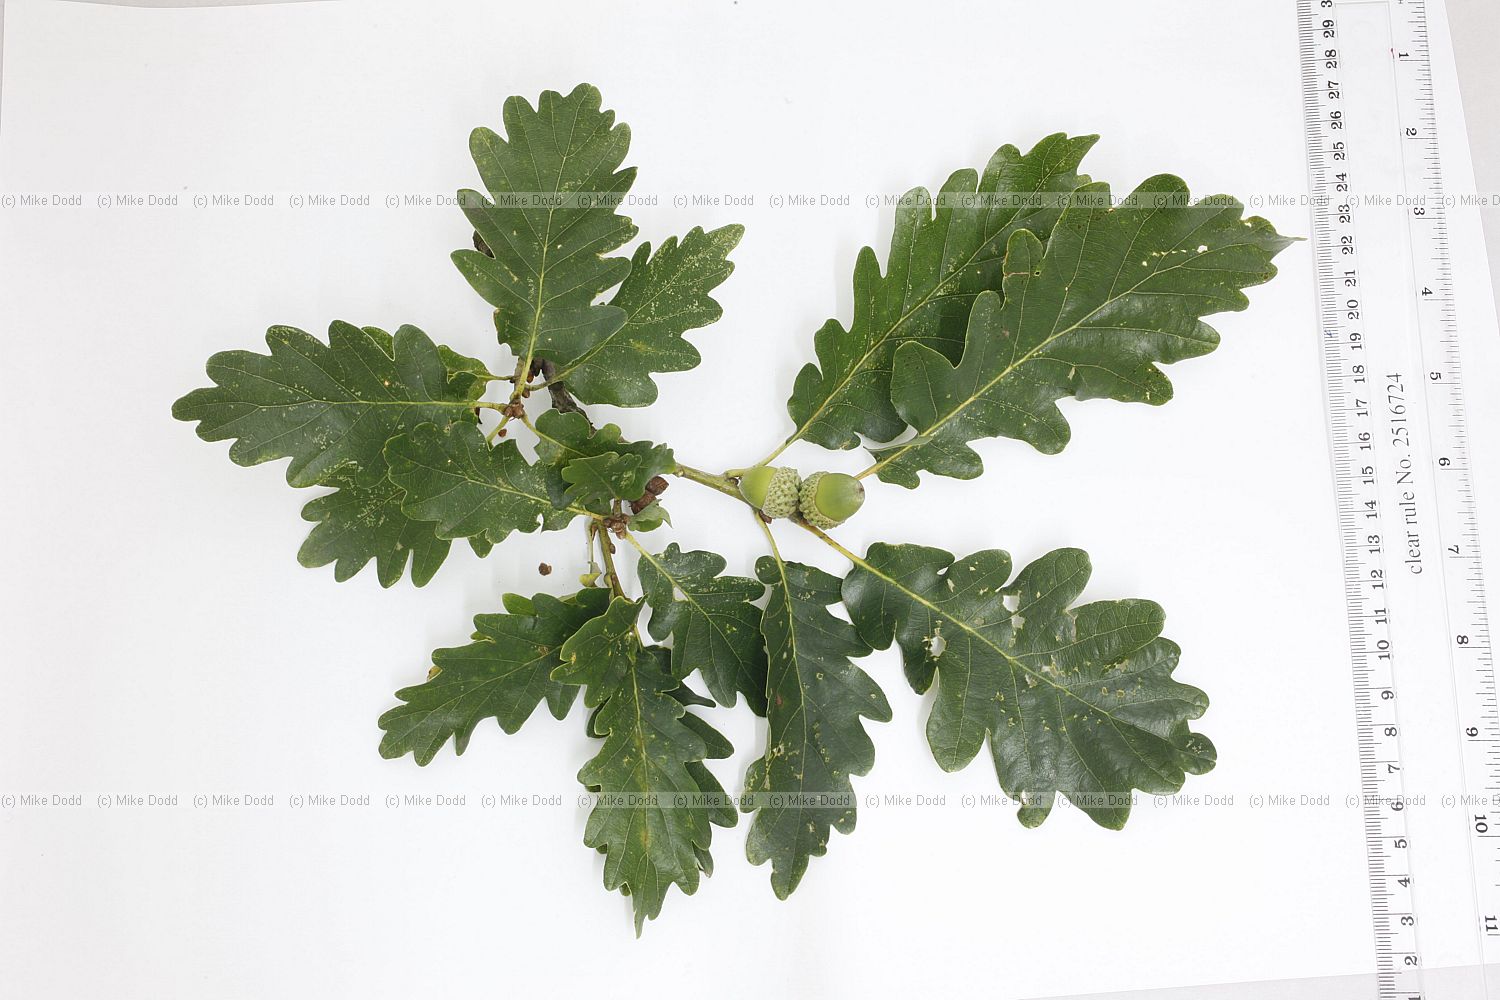 Quercus petraea Sessile Oak